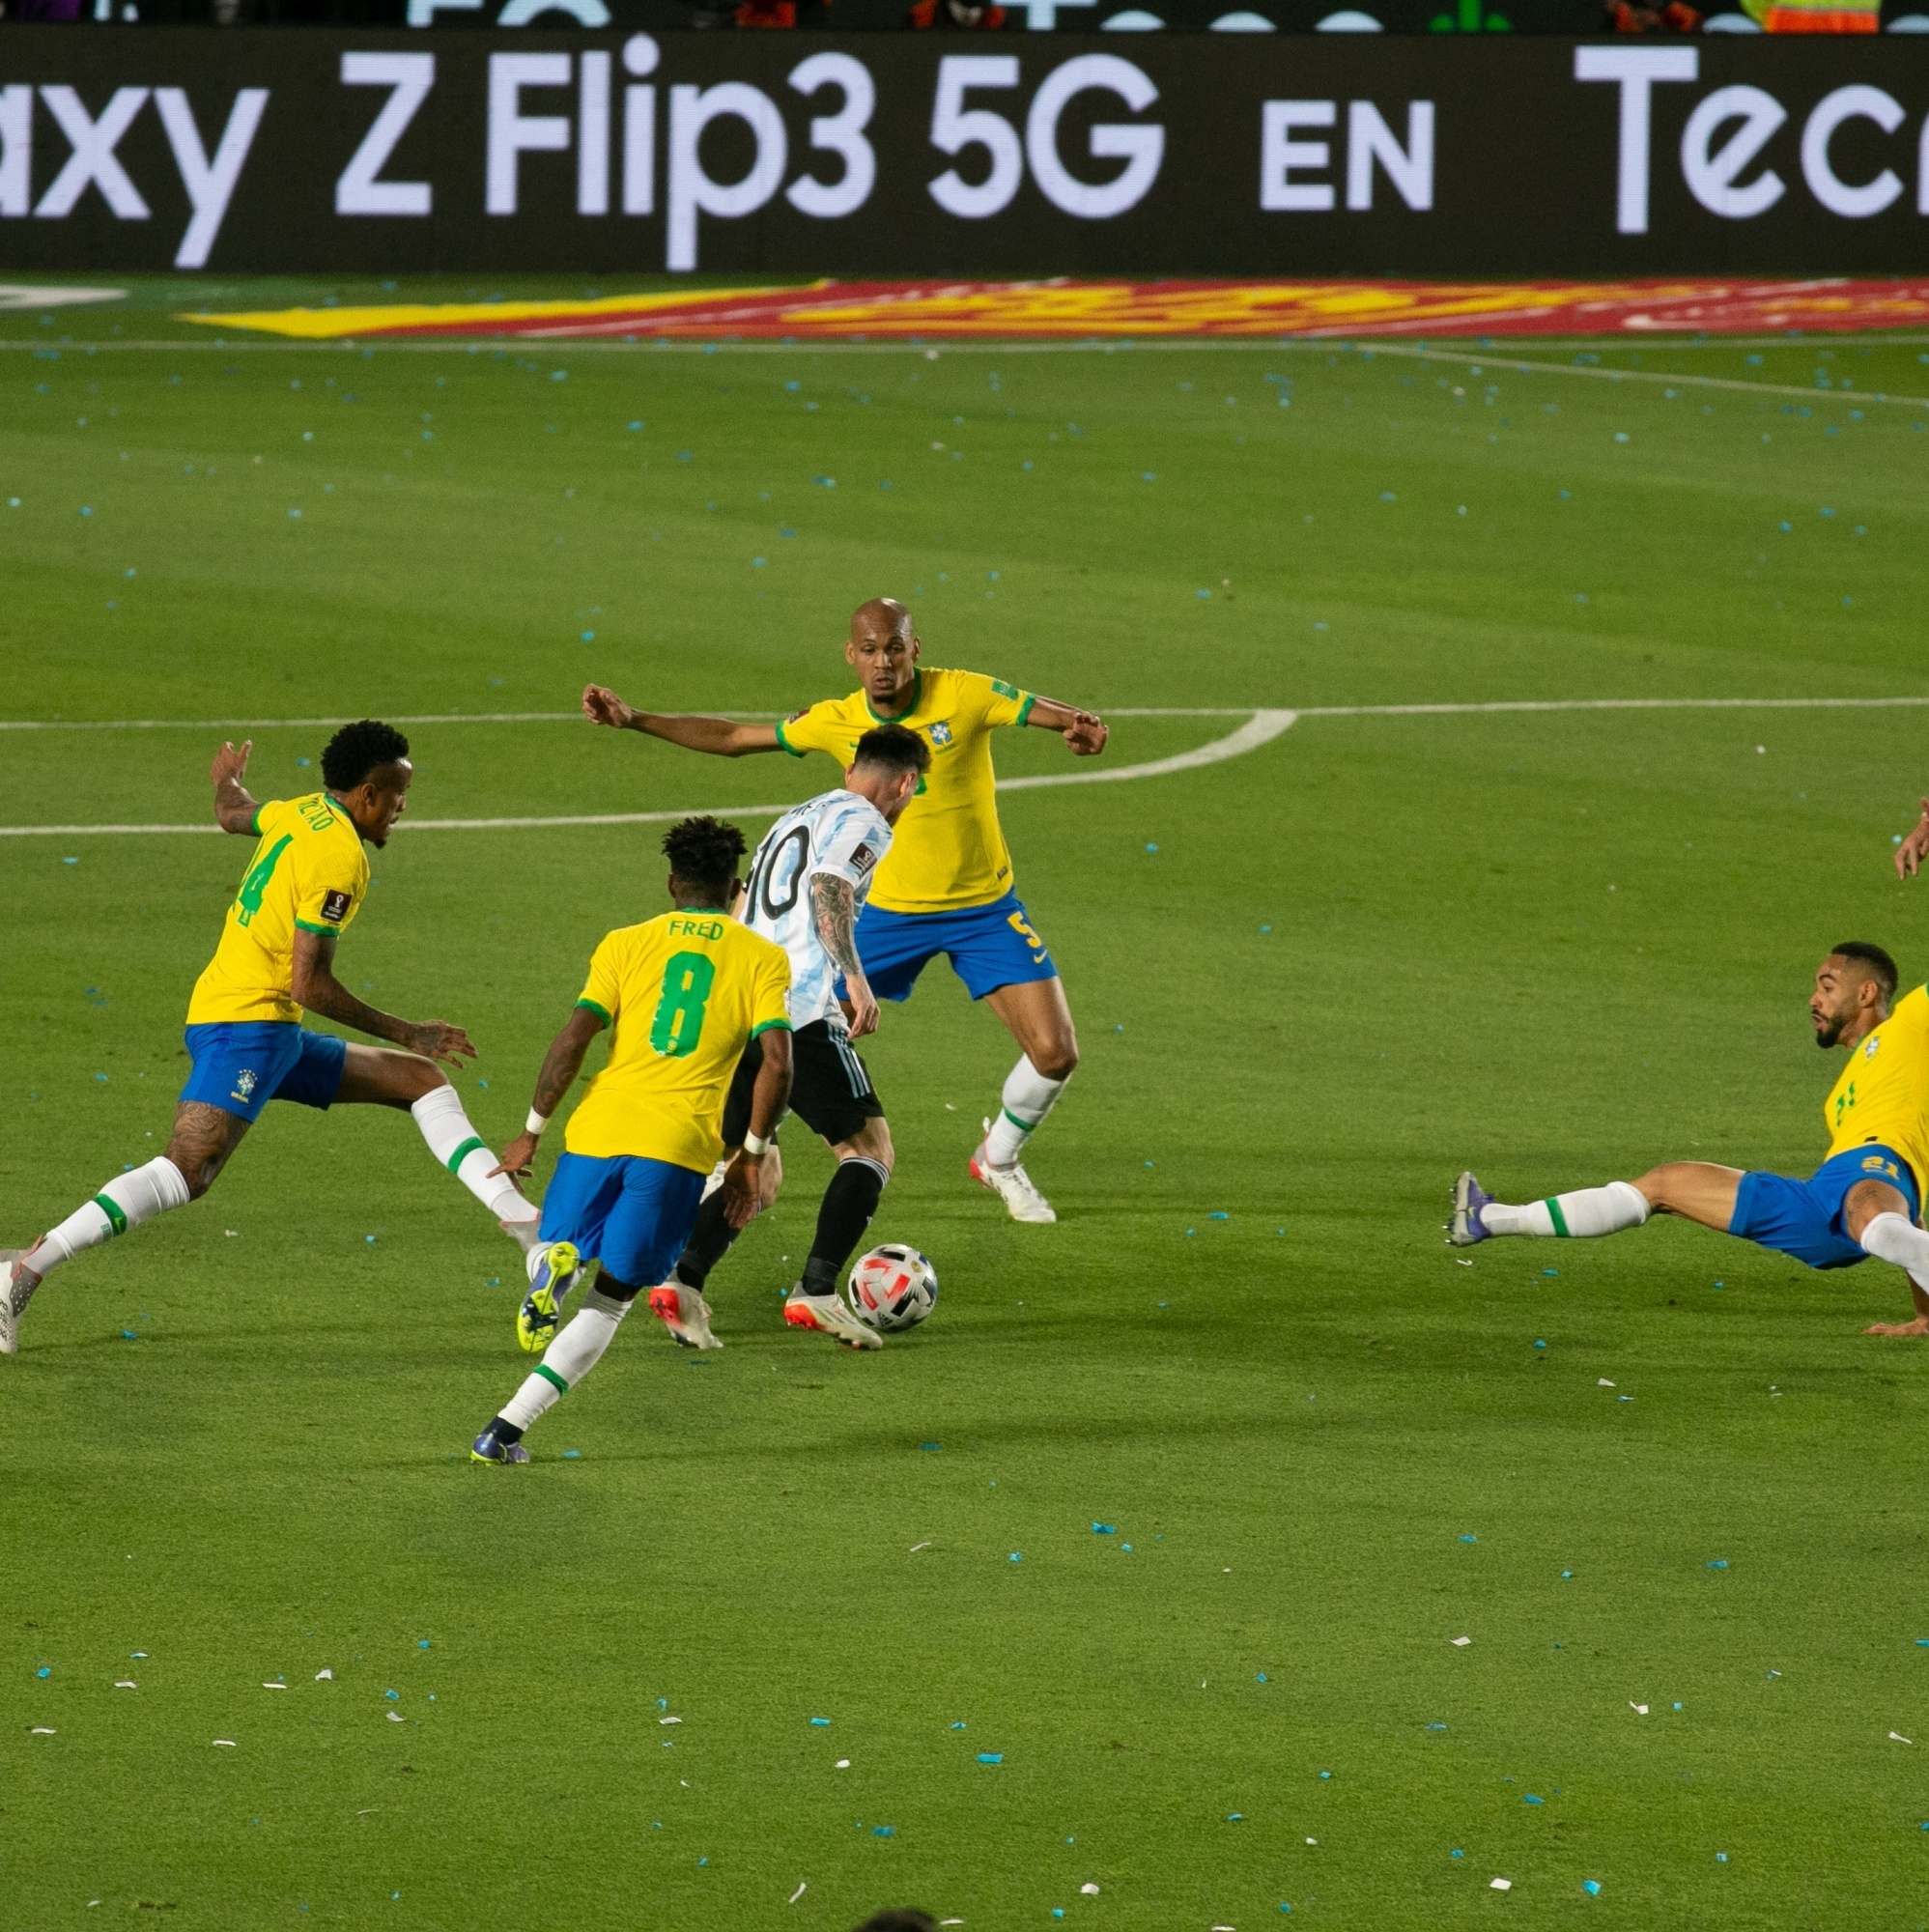 A partida entre Brasil e Argentina - Doentes por Futebol